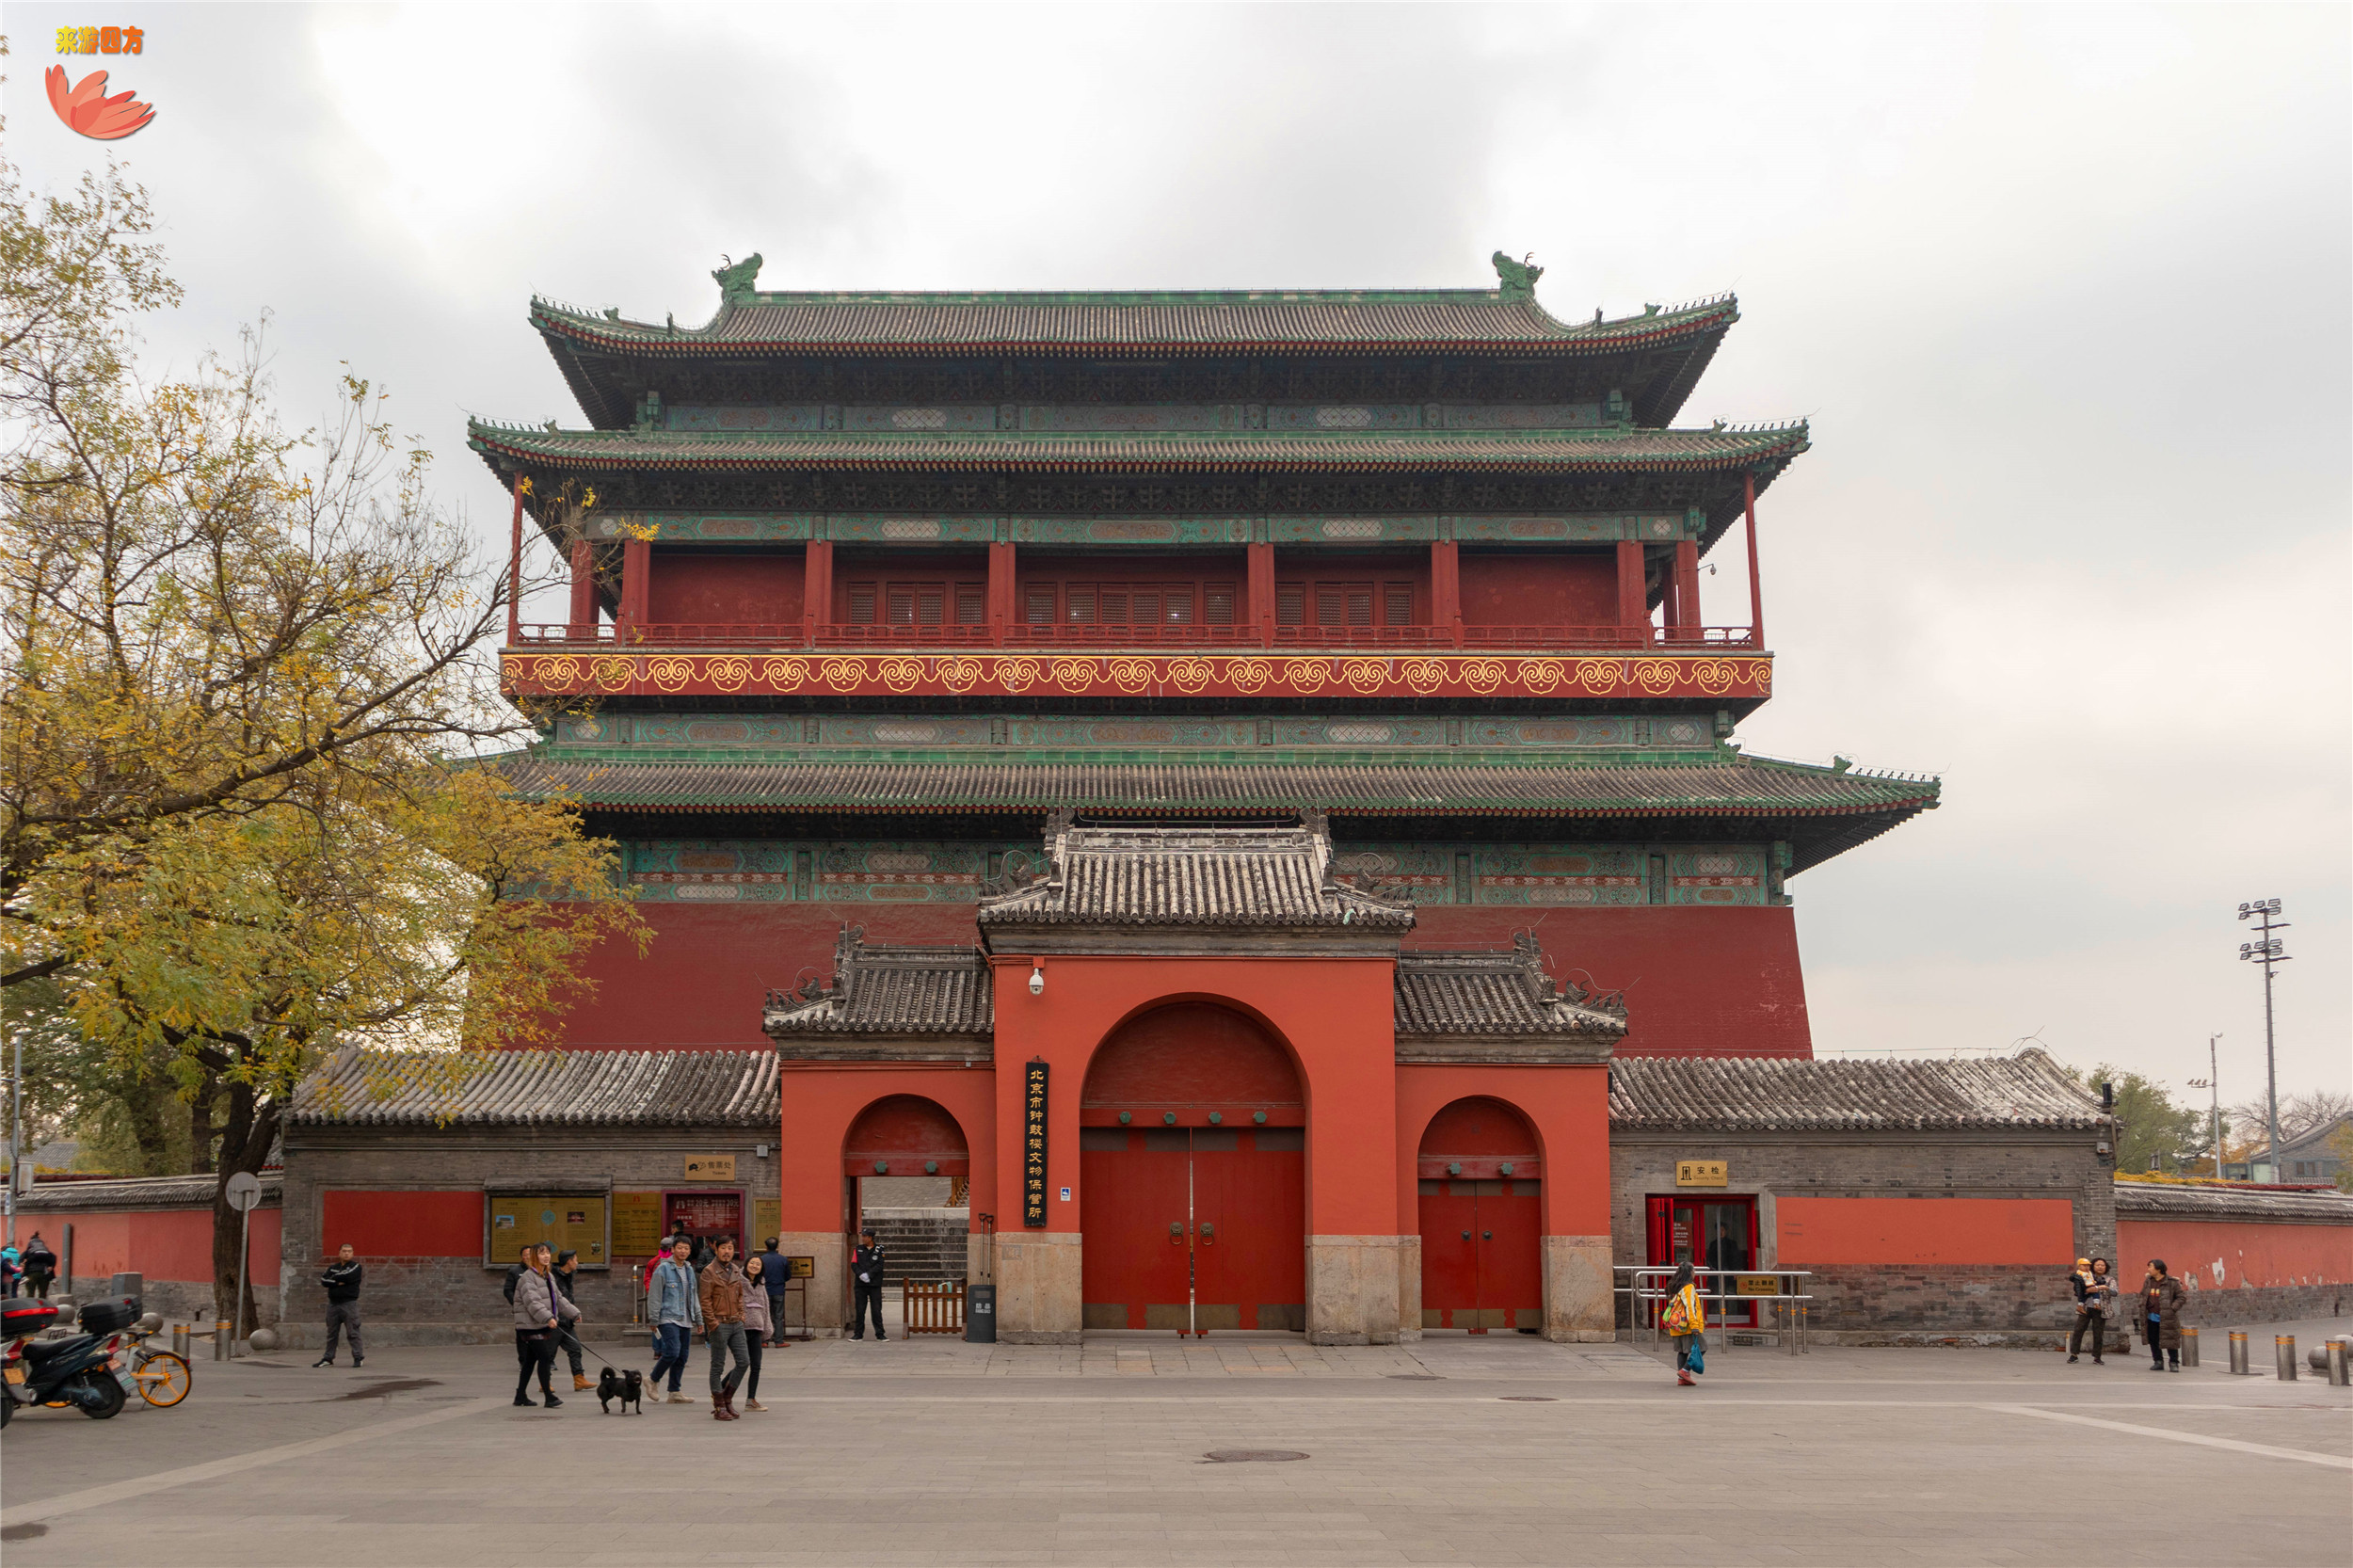 规模最大,形制最高钟鼓楼,古都北京的标志性建筑,位于中轴北端